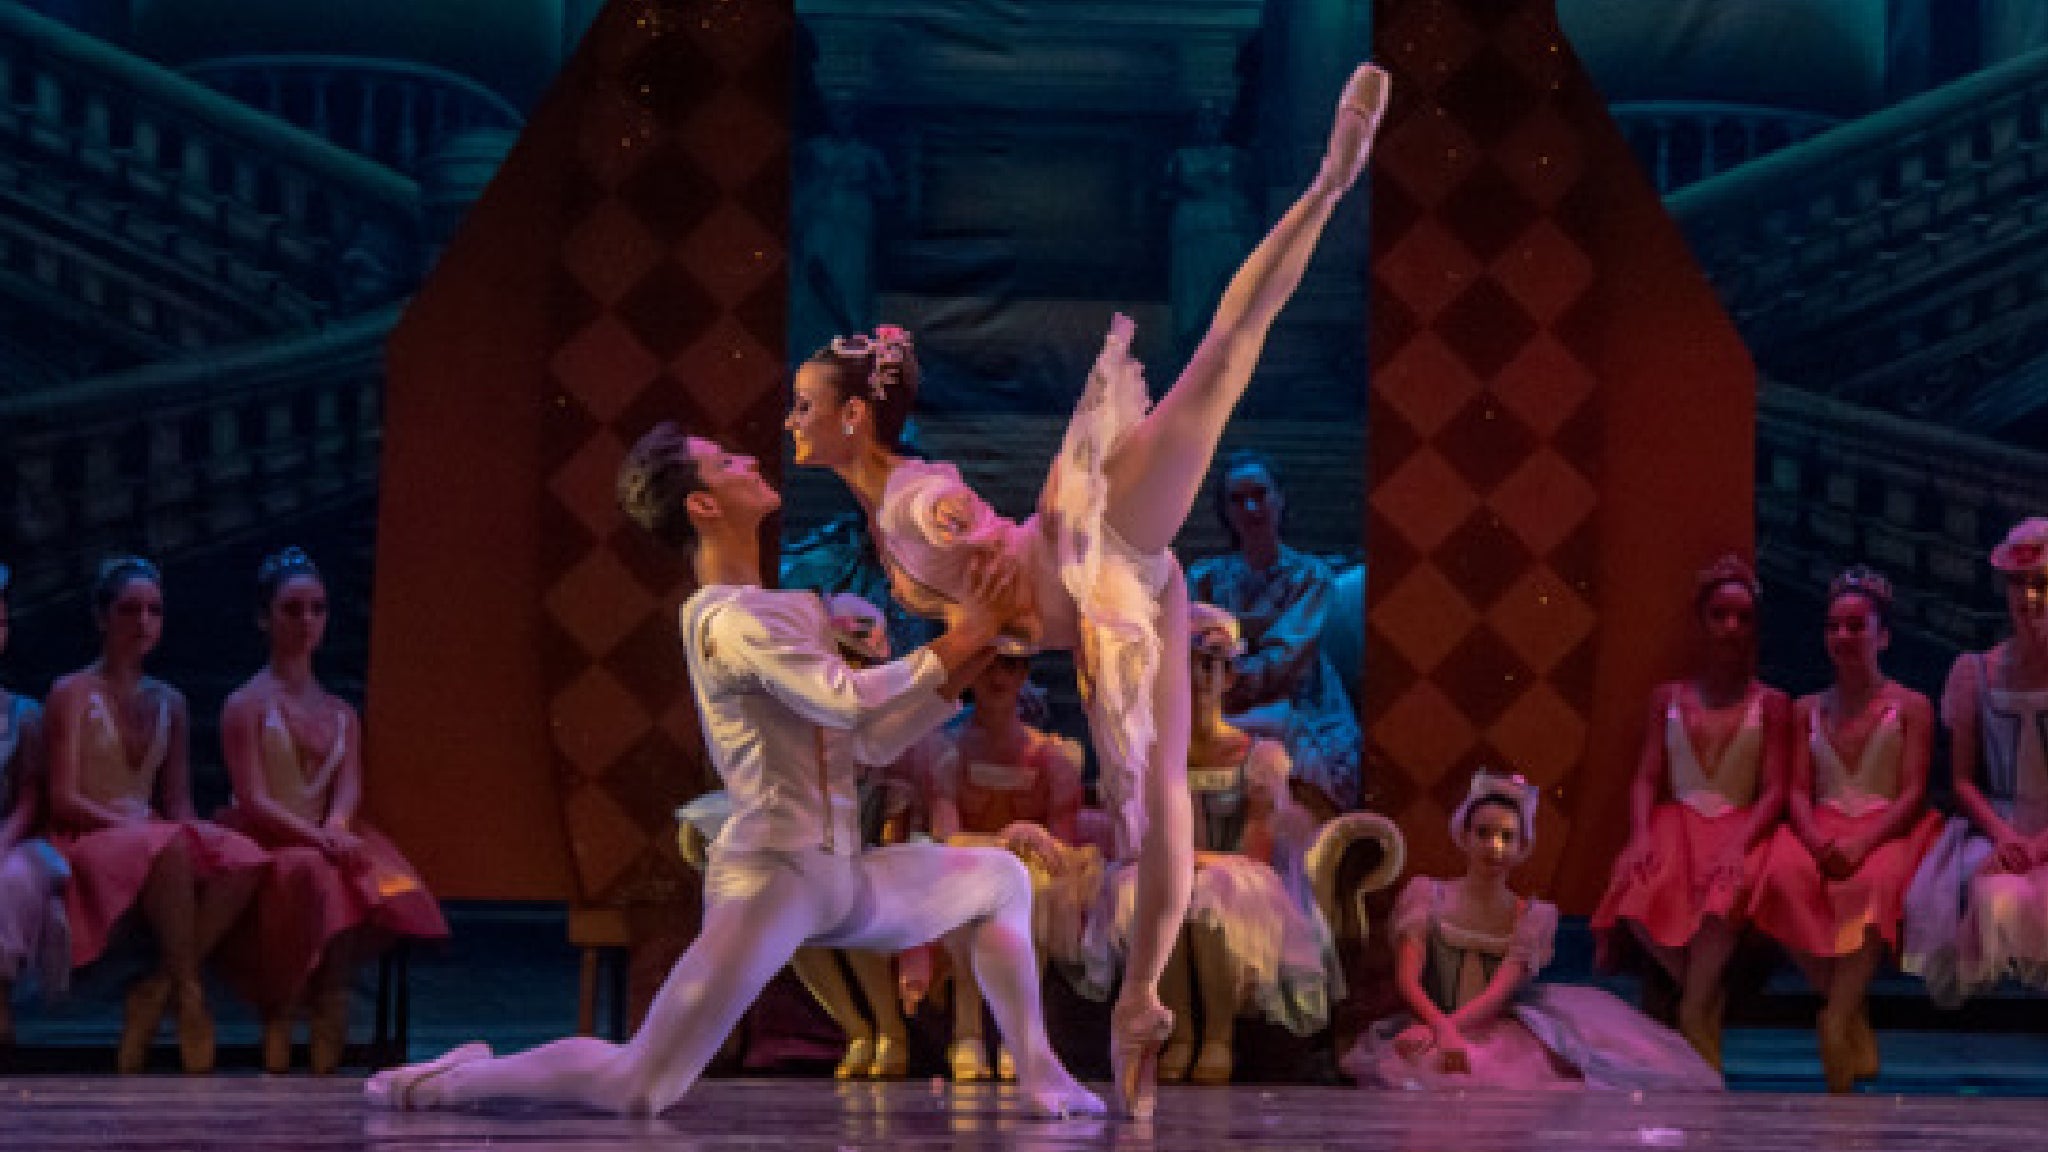 America's Ballet School: Alice in Wonderland